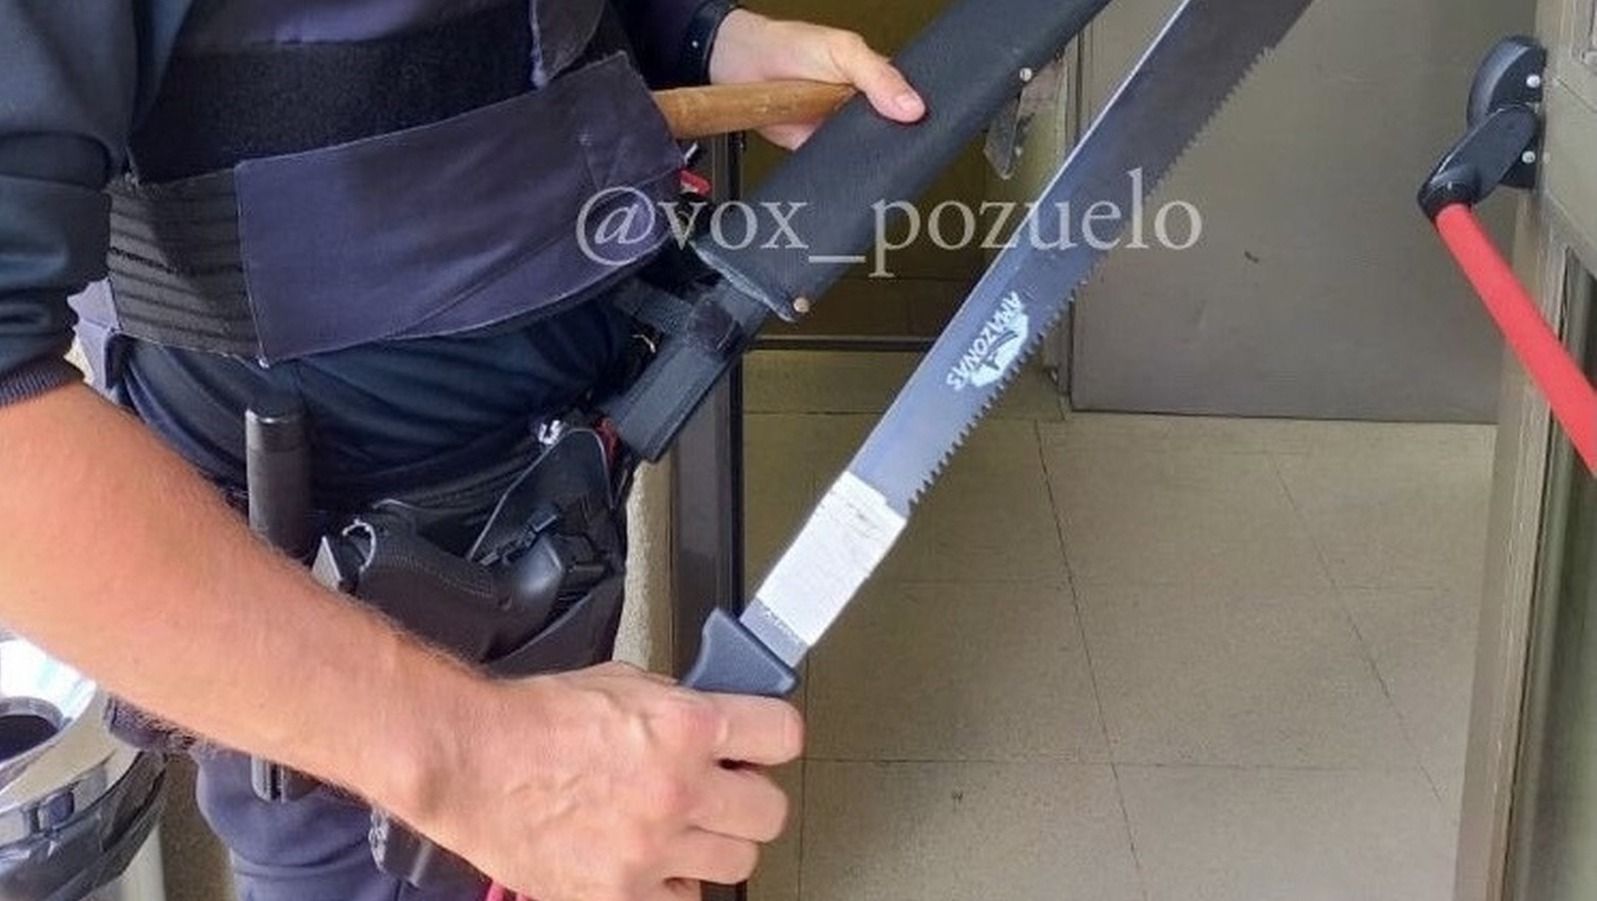 Vox denuncia que los vecinos de Pozuelo tienen miedo por el incremento de la delincuencia en la localidad